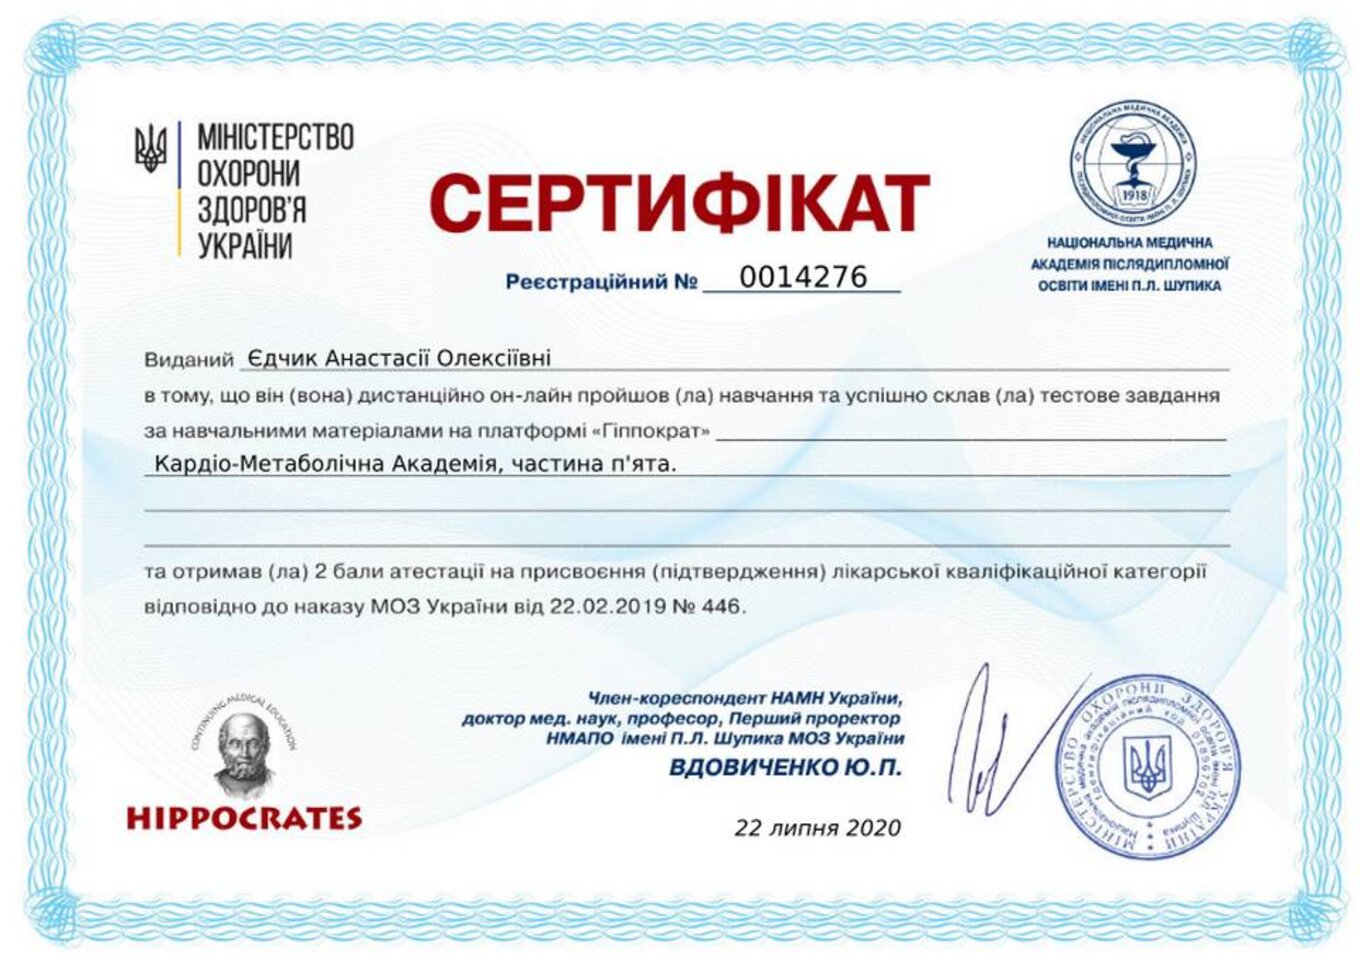 certificates/yedchik-anastasiya-oleksiyivna/erc-edchik-cert-63.jpg